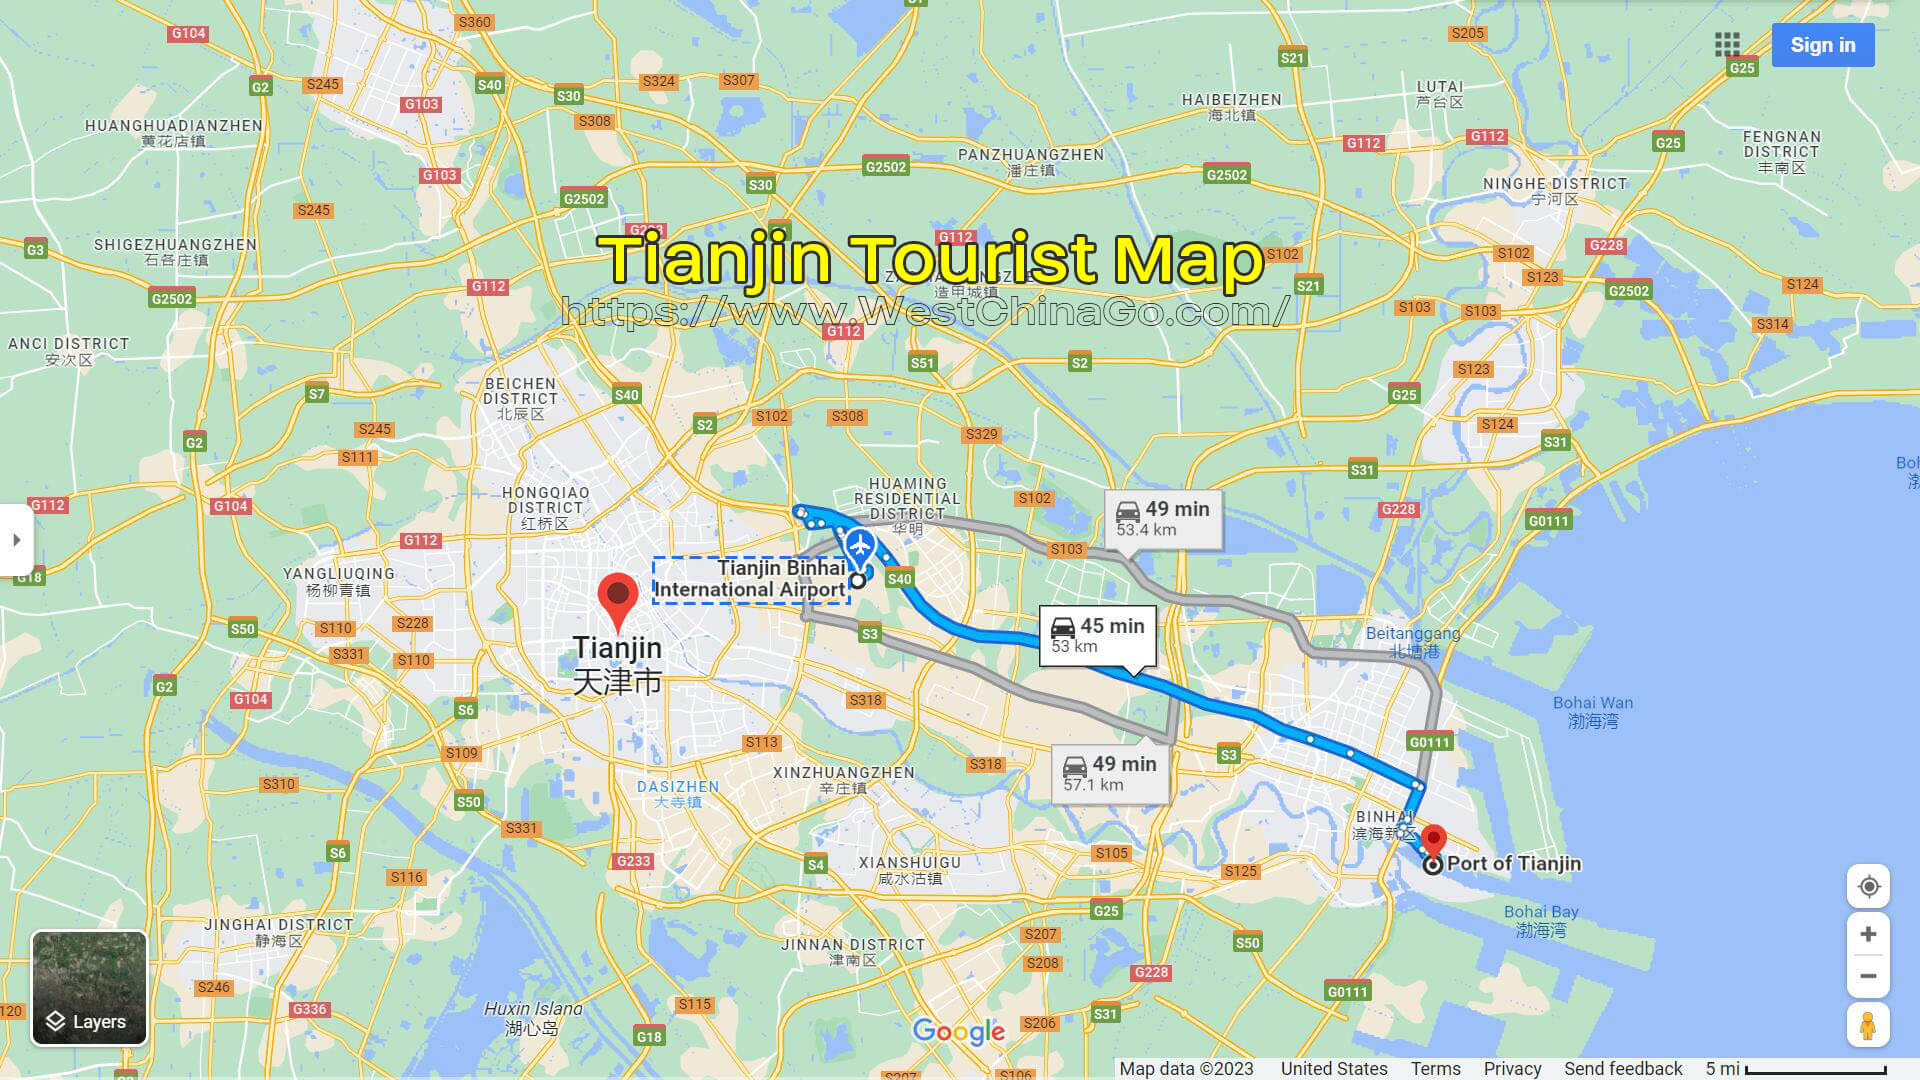 Tianjin Tourist Map